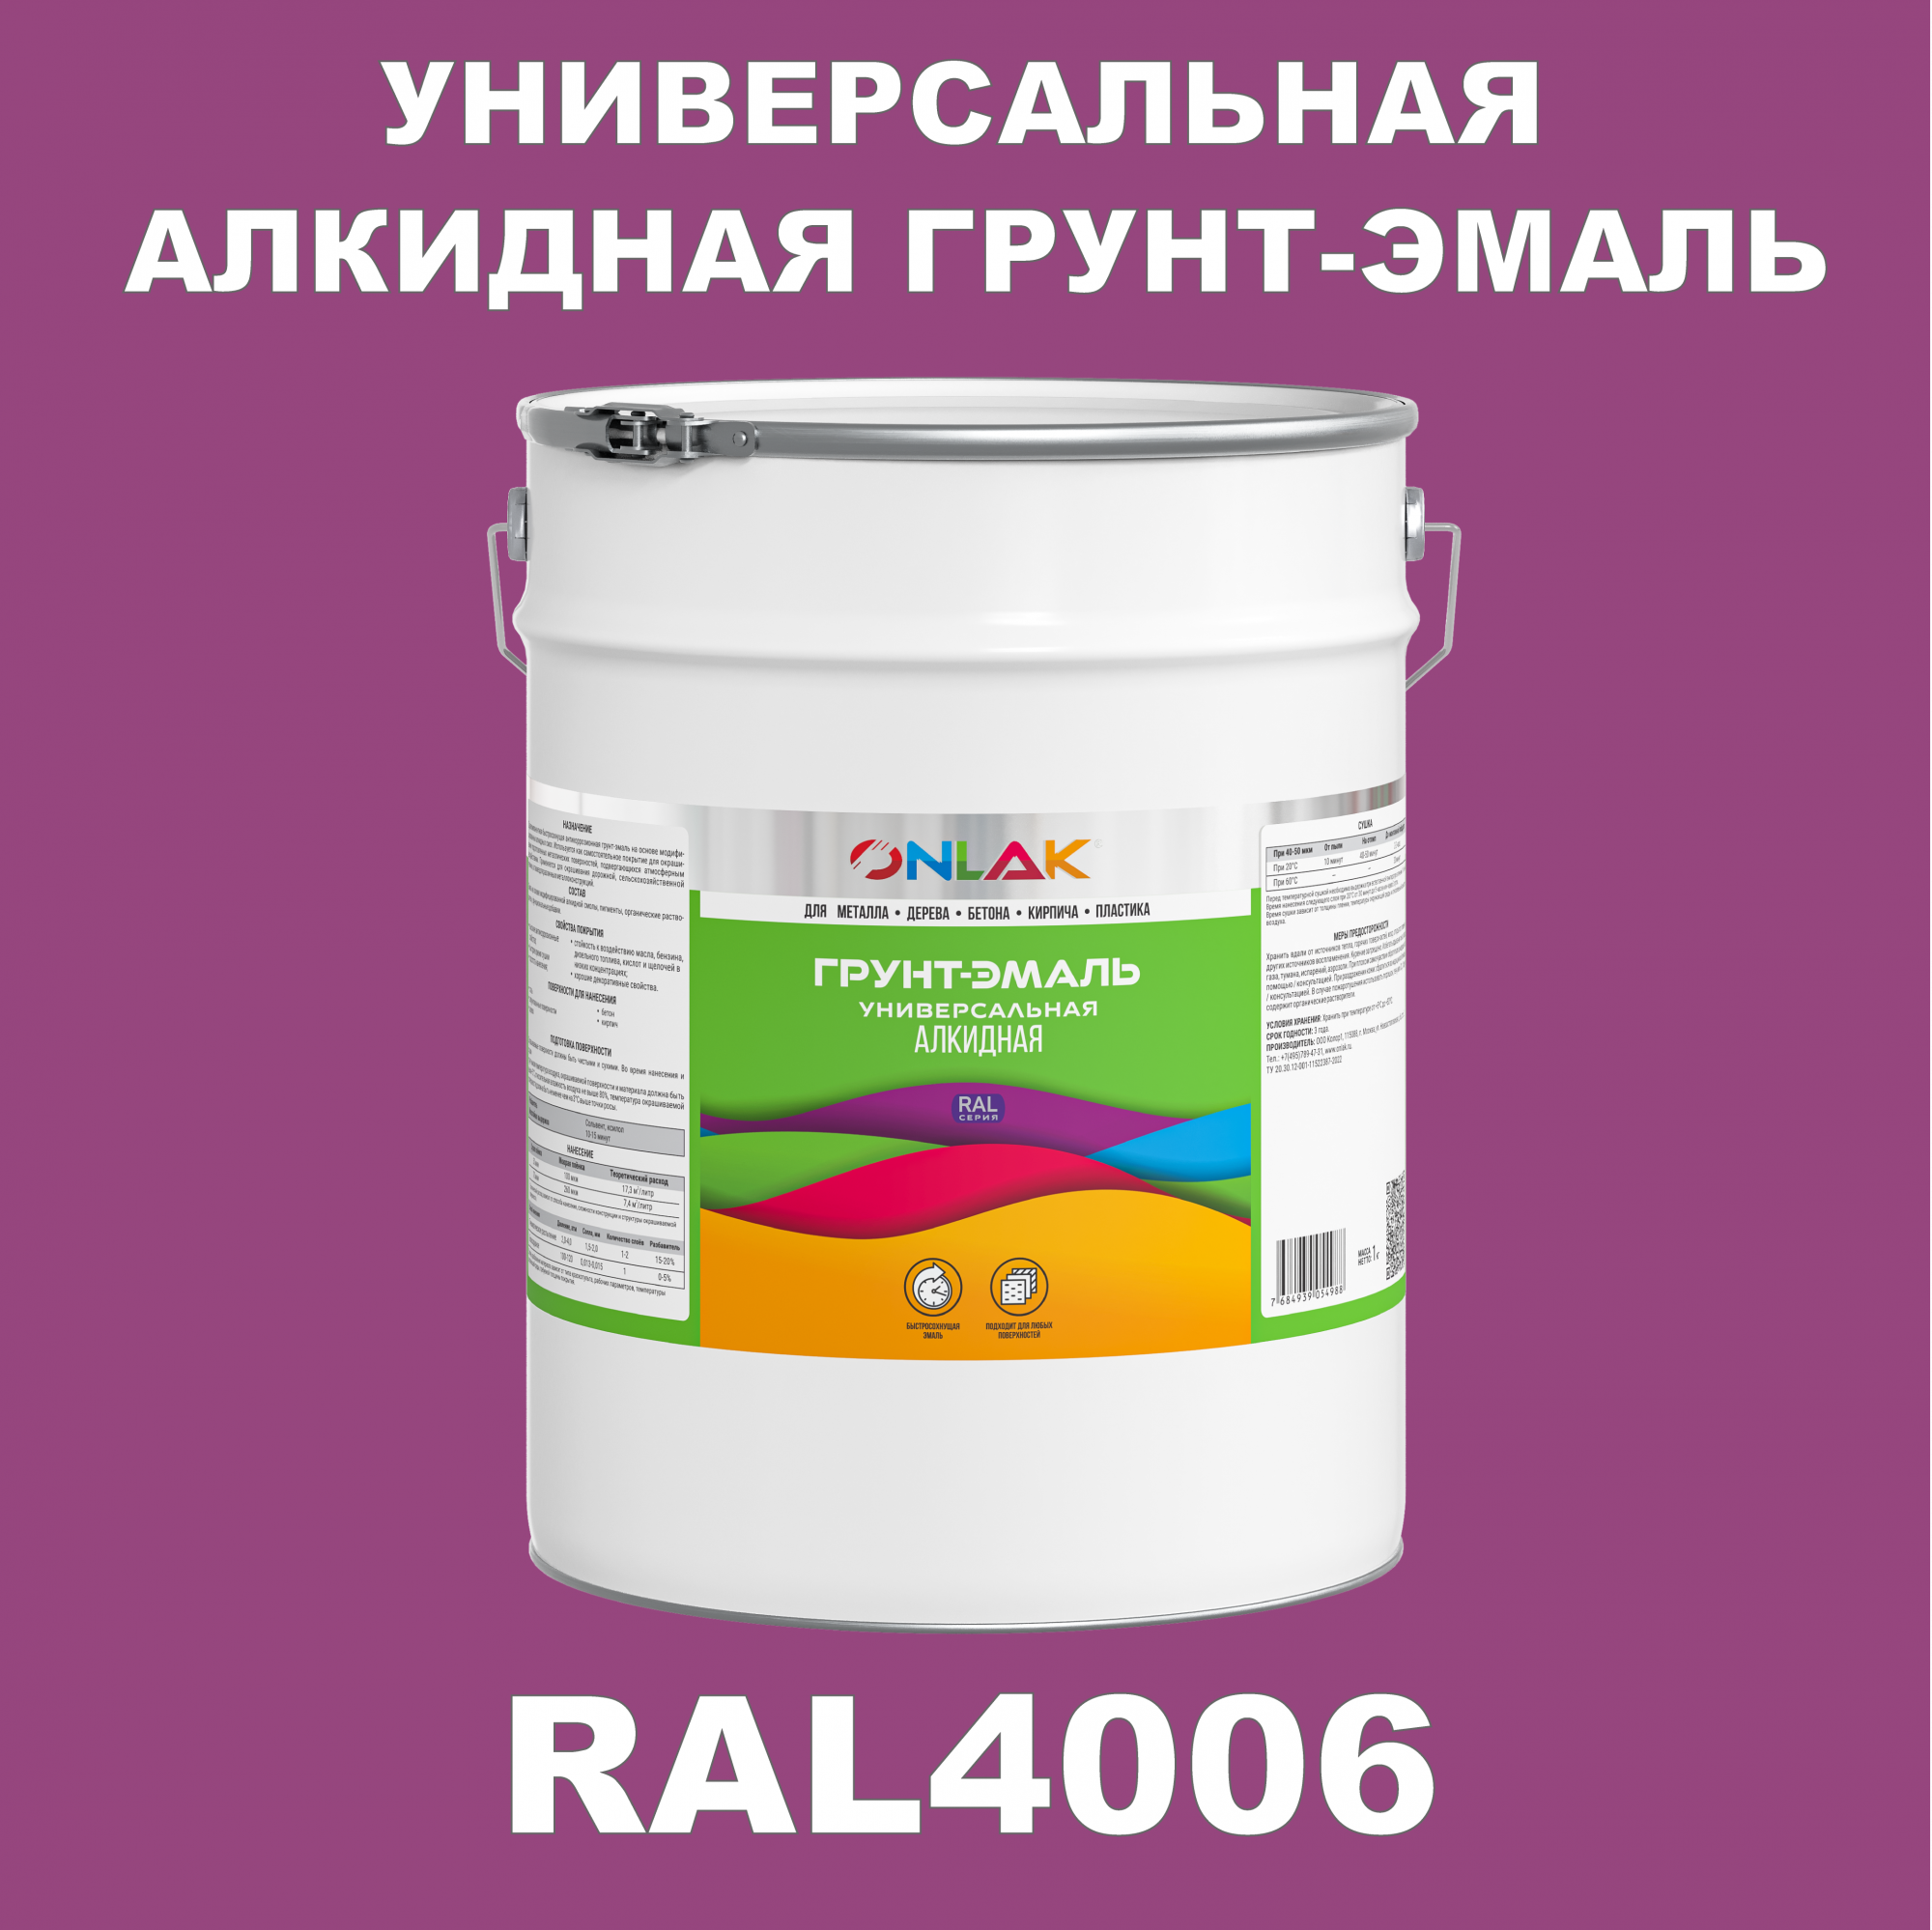 Грунт-эмаль ONLAK 1К RAL4006 антикоррозионная алкидная по металлу по ржавчине 20 кг антикоррозионная грунт эмаль onlak ral 4009 фиолетовый 593 мл